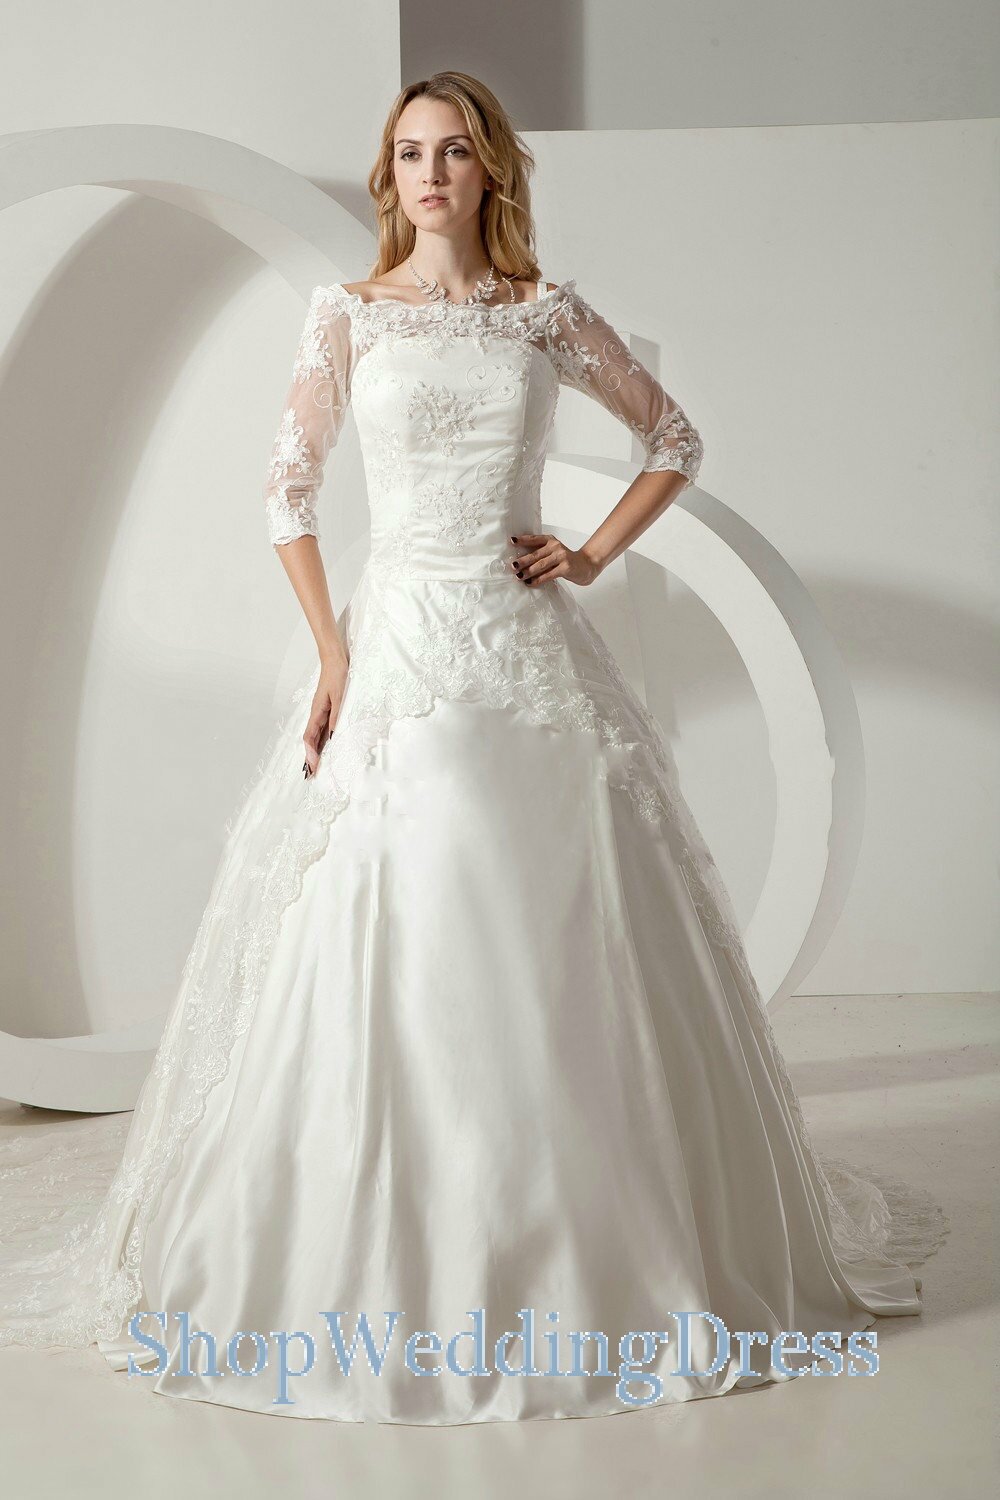 Long sleeve lace wedding dresses 2013 Photo - 1